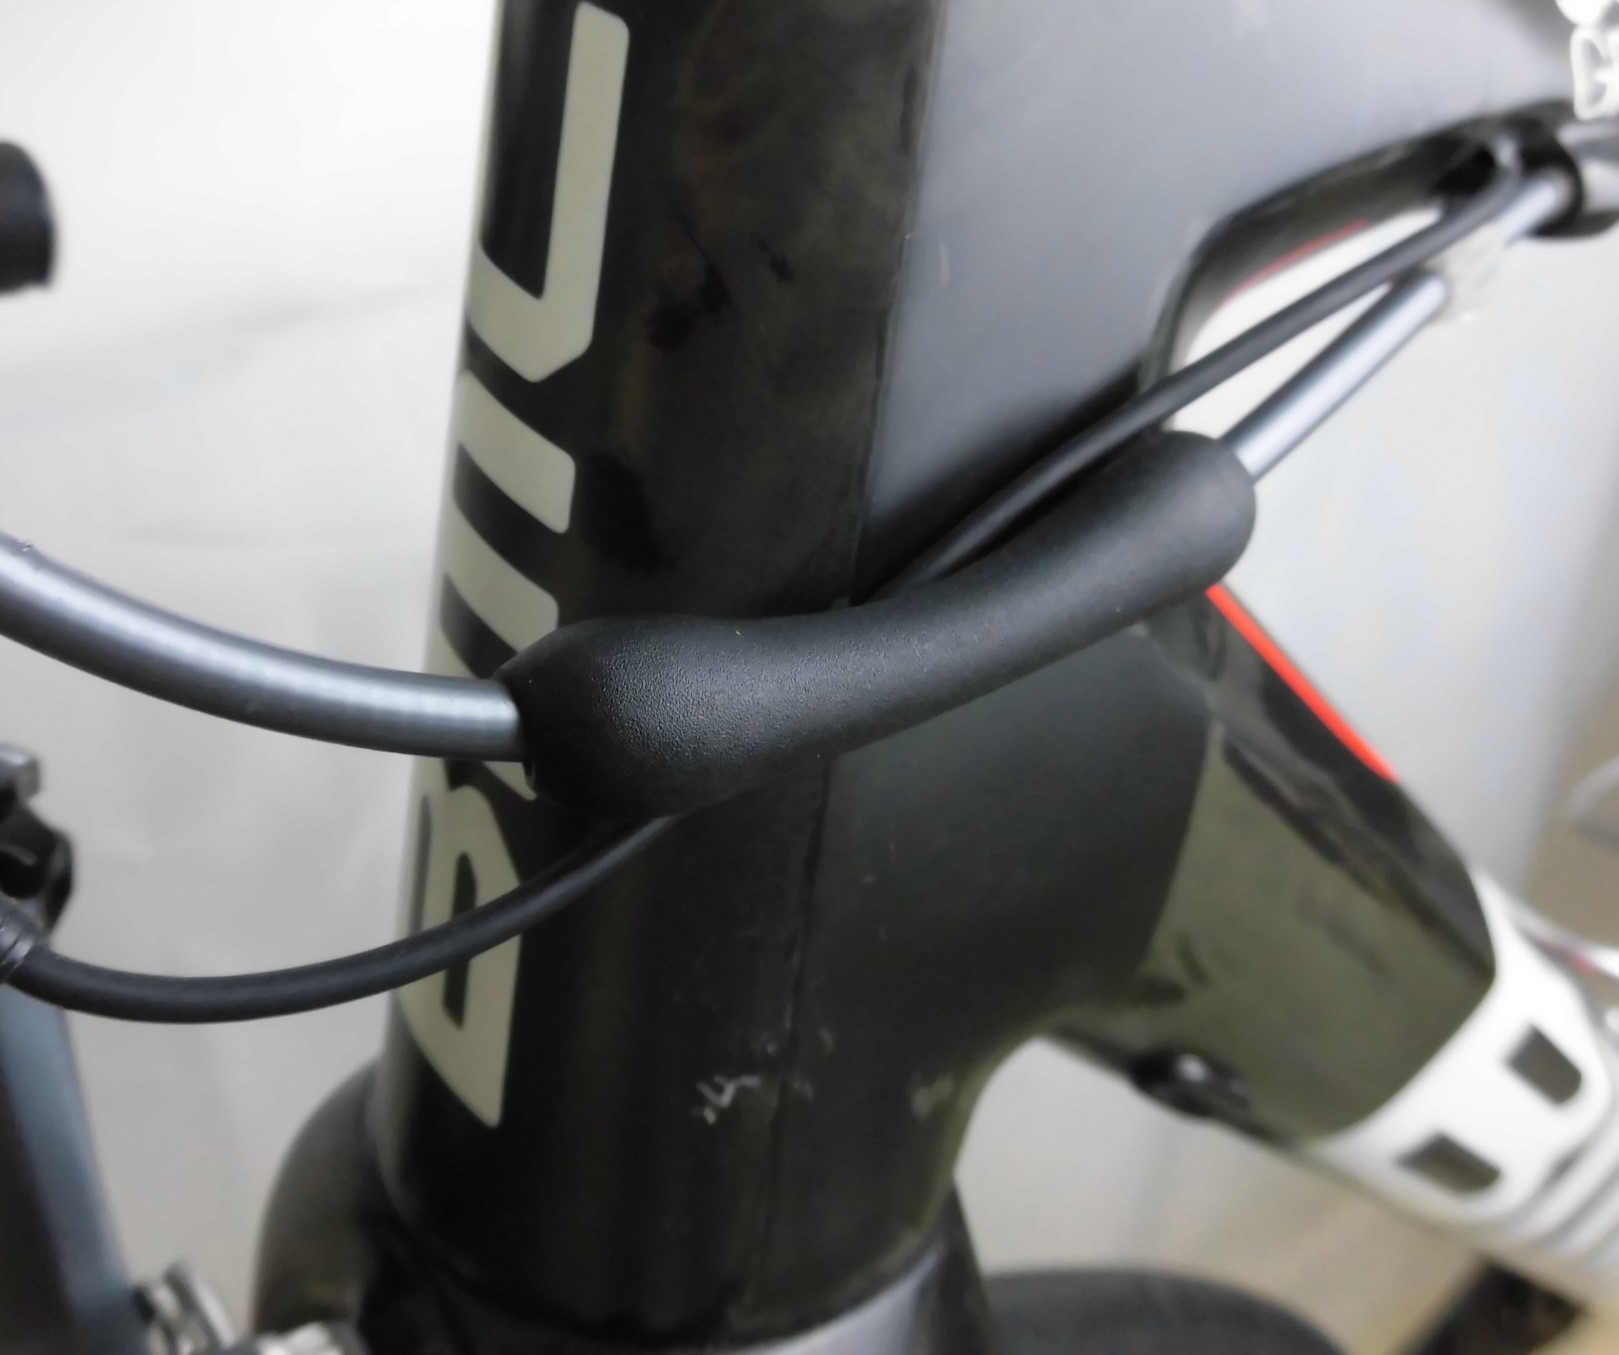 7198円 【高品質】 Juscycling 自転車フレーム保護プロテクター ゴム製スリーブ シフターブレーキケーブル用 3色 4点 バッグ